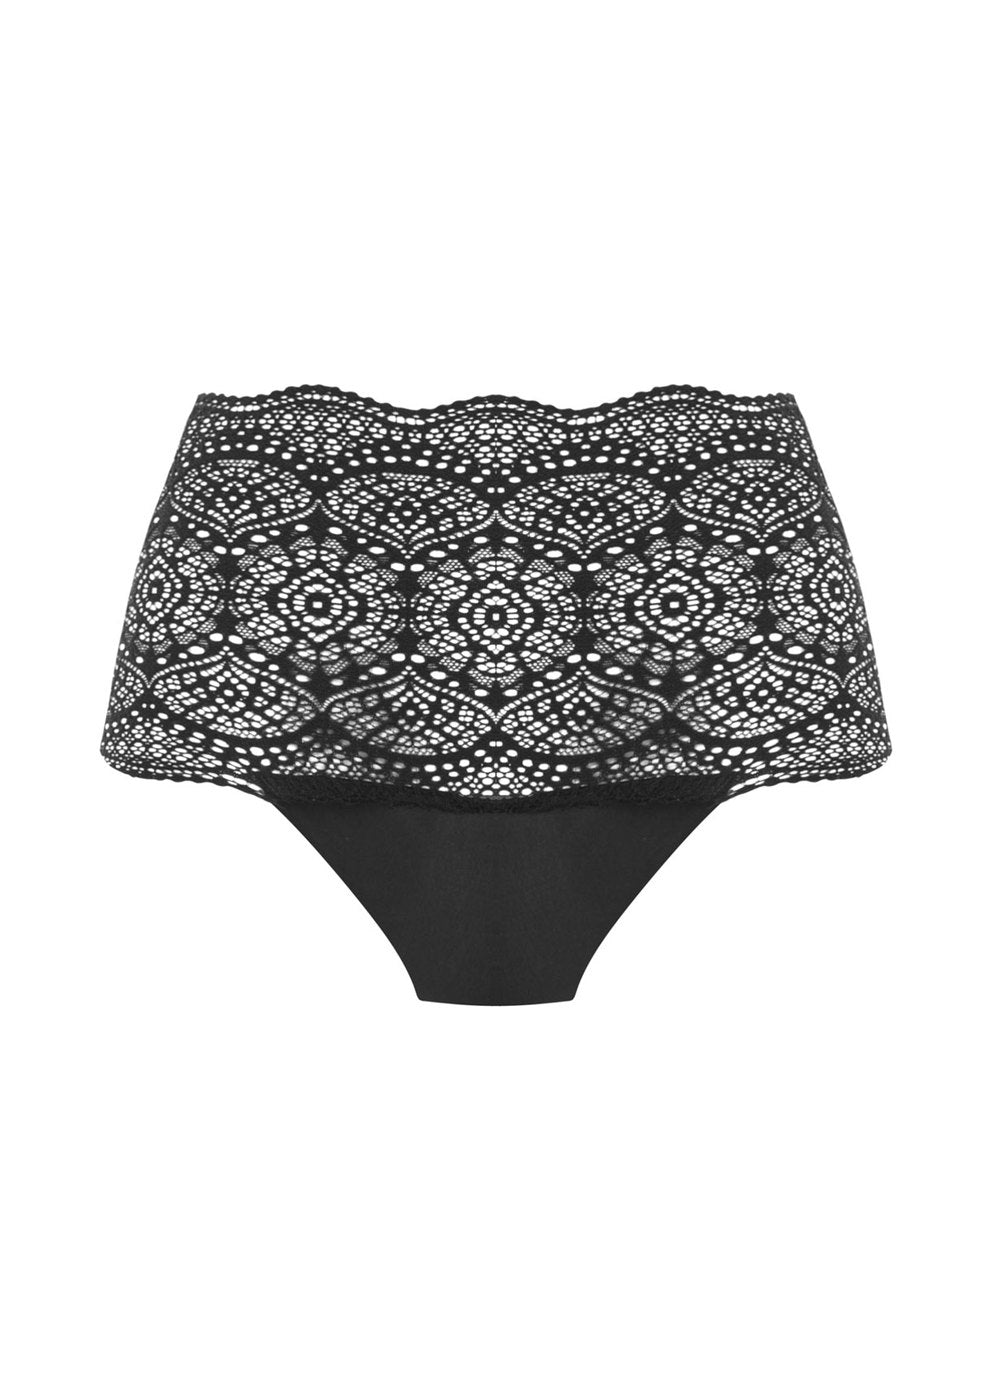 Fantasie Fusion Lace Black Full Brief – Shalari Boutique Lingerie & Swimwear